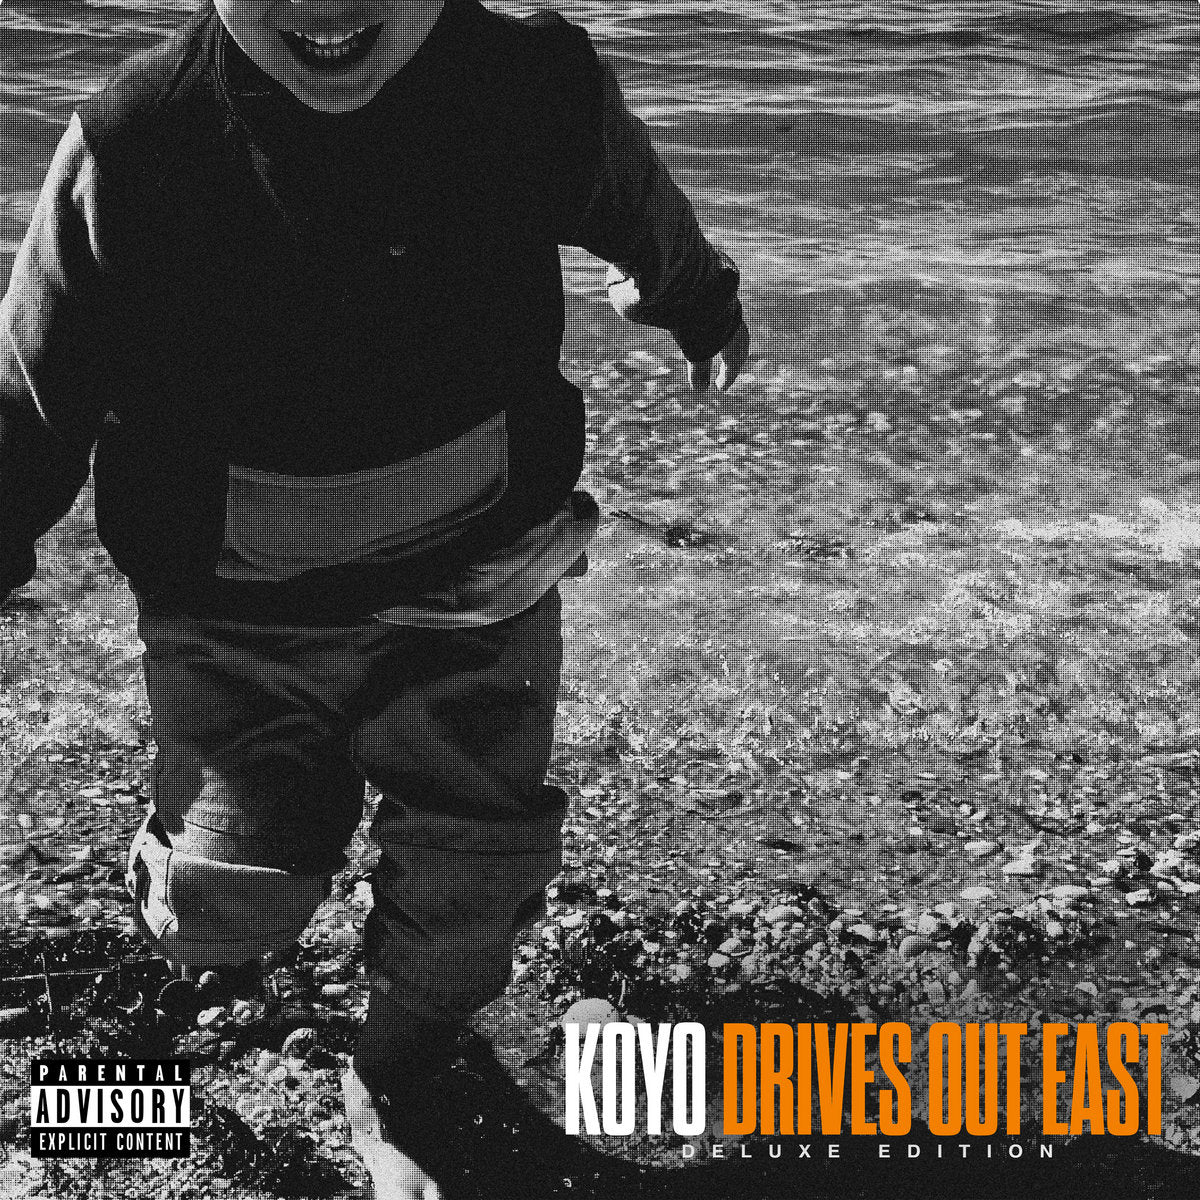 Koyo "Drives Out East" 12" Vinyl